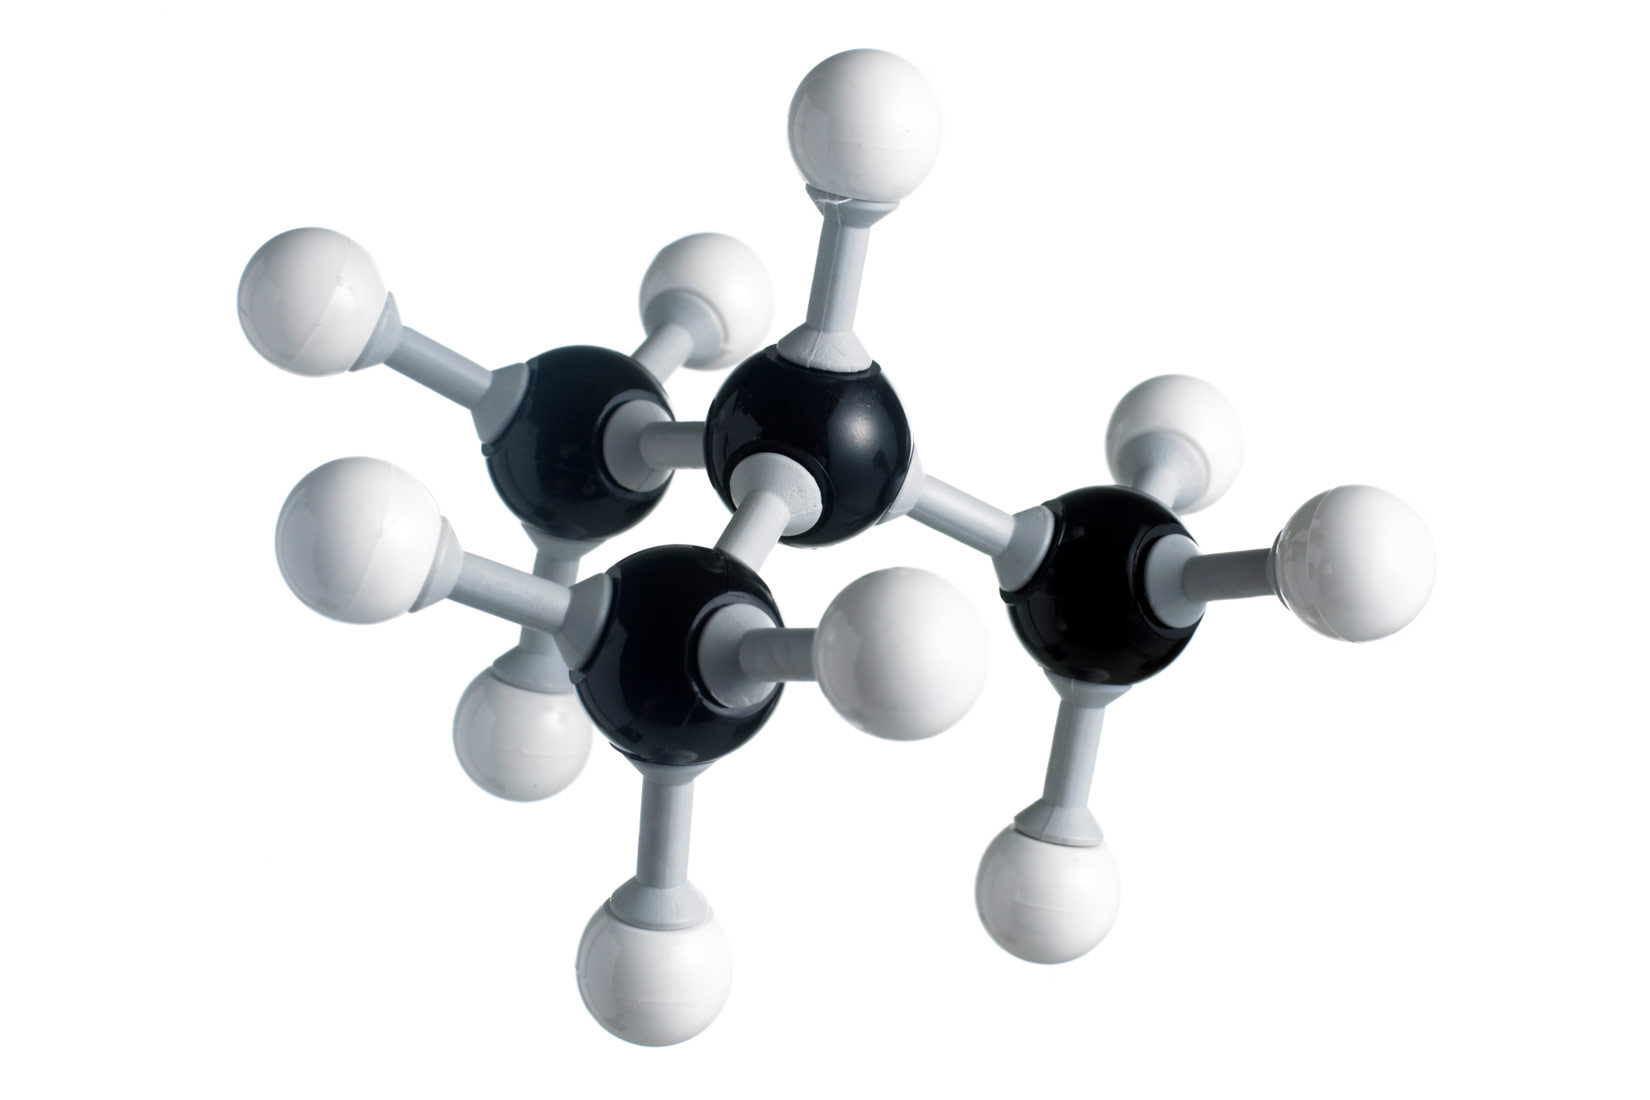 Fotografija prikazuje molekulu butana načinjenu od kuglica i štapića. Molekula je razgranatog lanca. Tri atoma ugljika su u nizu. Od srednjeg atoma ugljika grana se četvrti atom ugljika. Svi atomi ugljika povezani su jednostrukim vezama s atomima vodika.